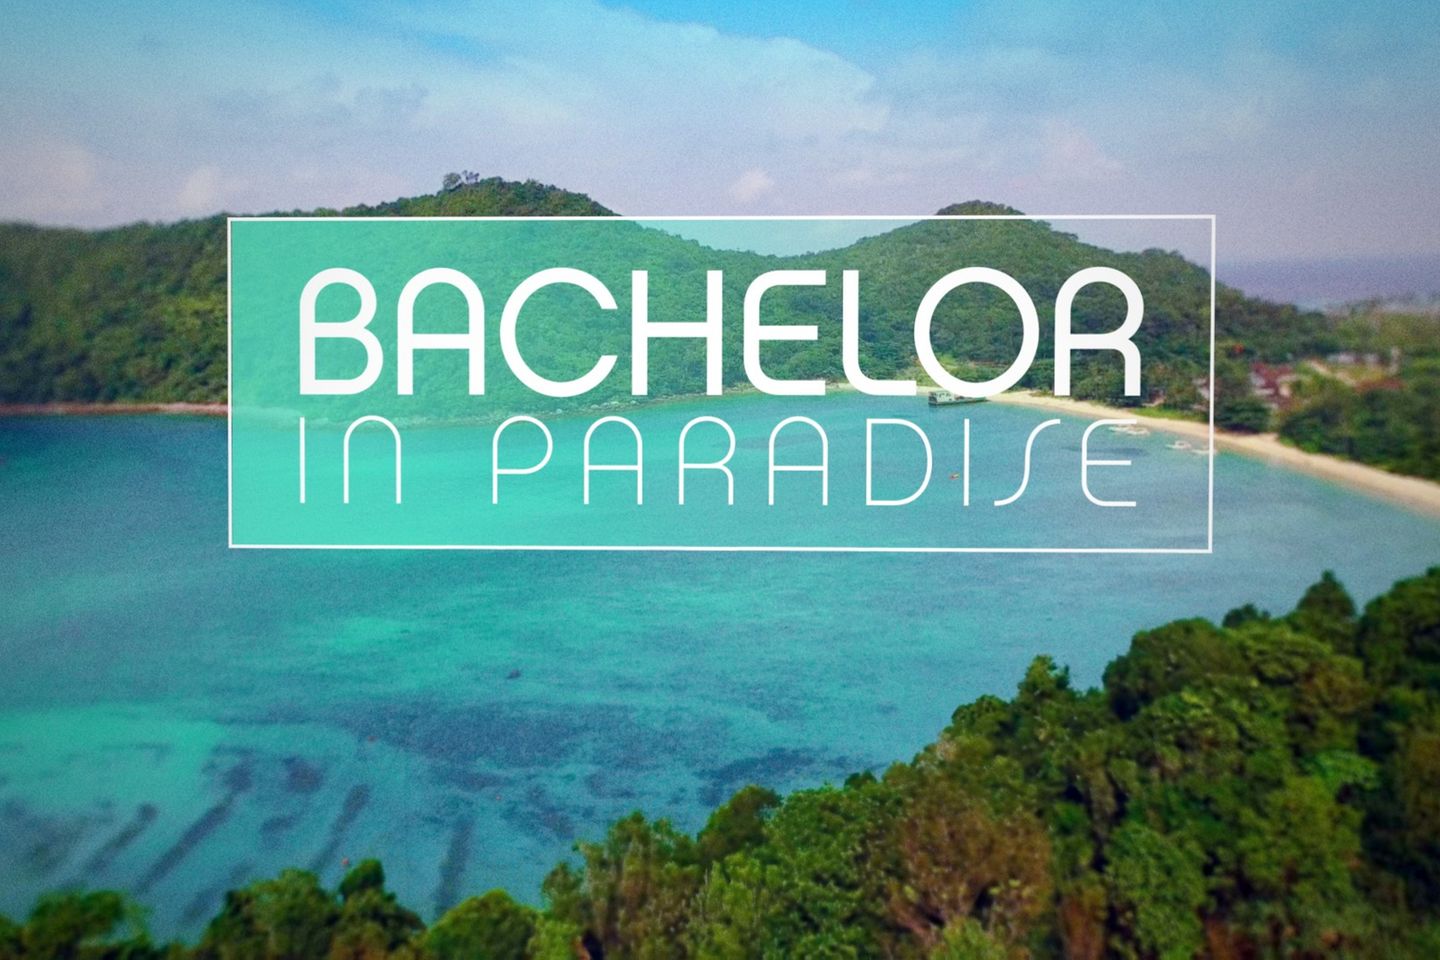 EIne Kandidatin steigt völlig überraschend bei "Bachelor in Paradise" aus.